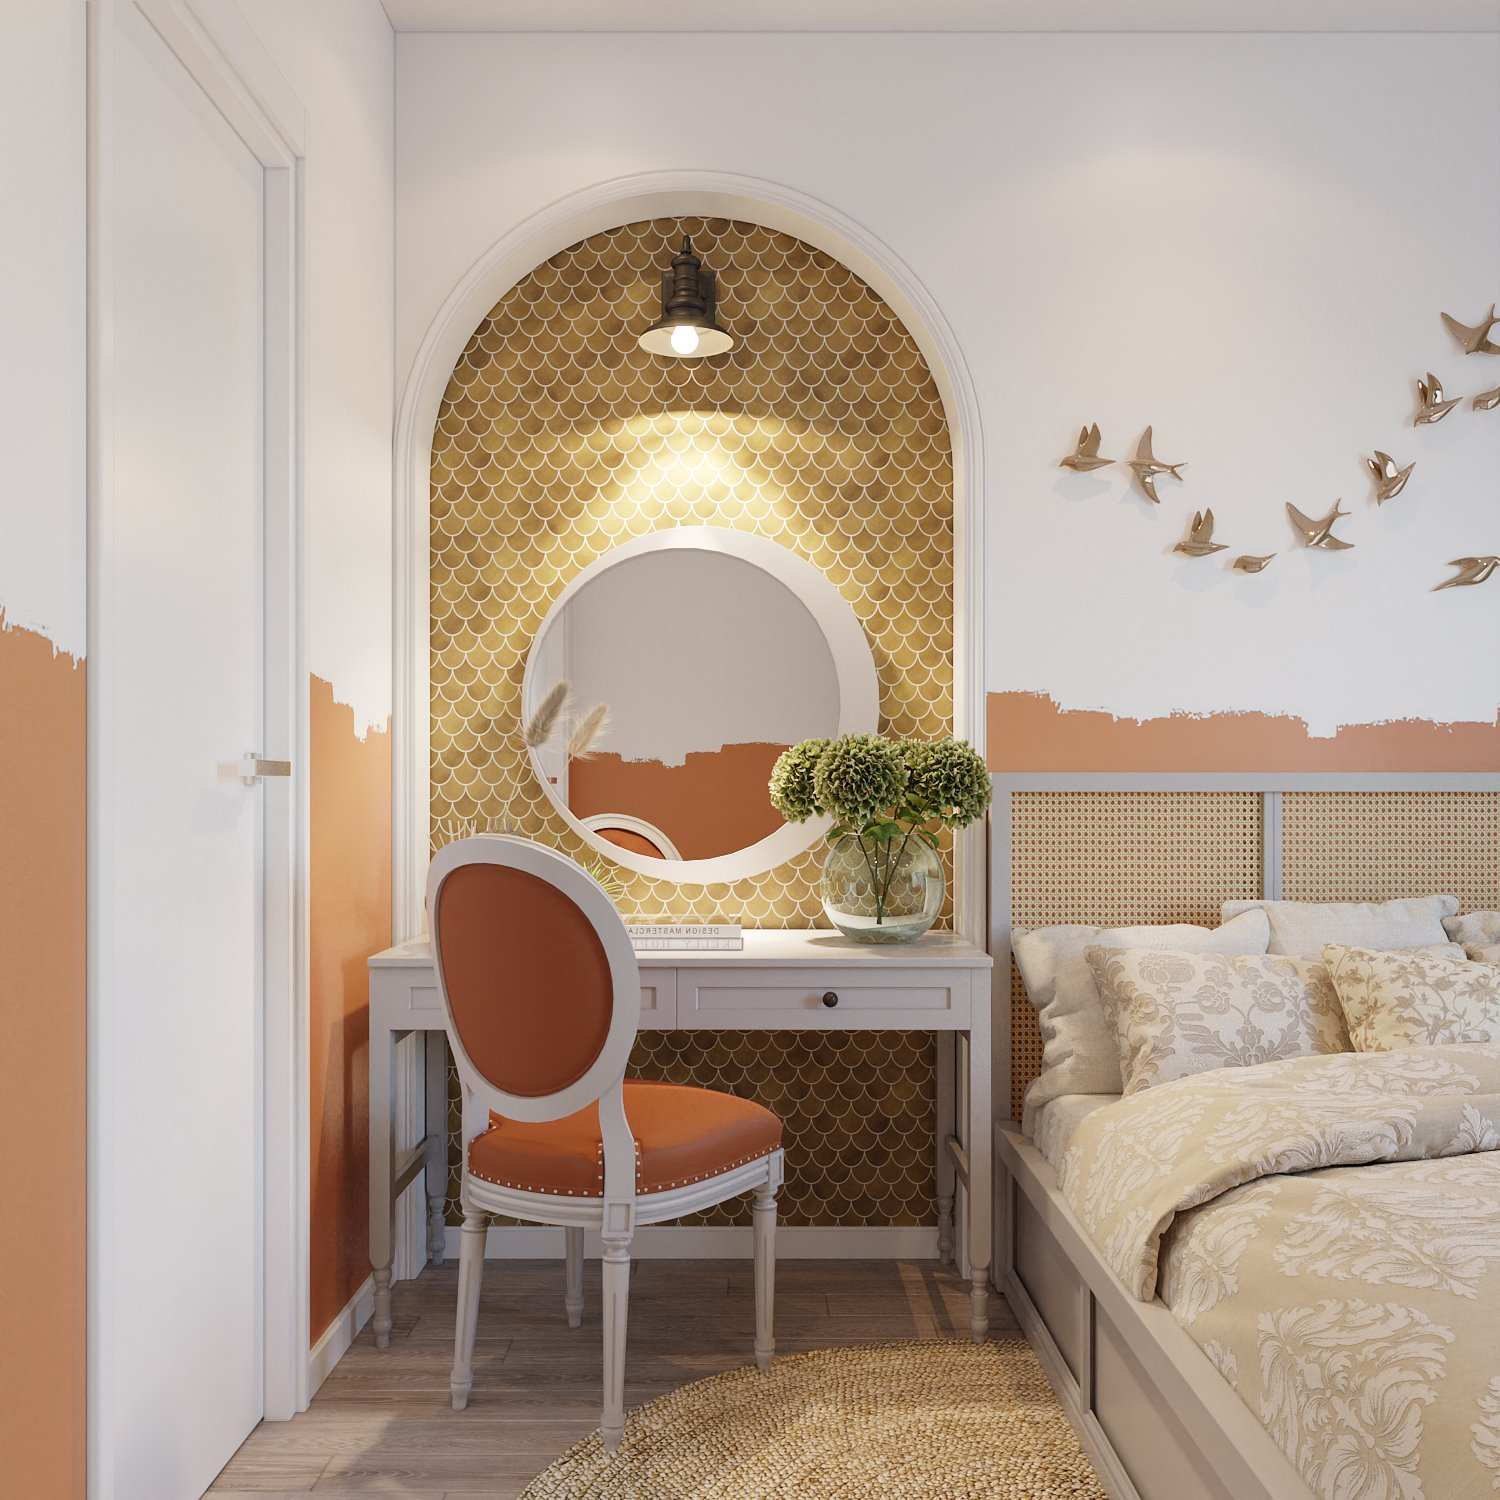 Sơn tường phòng ngủ được pha màu một cách tinh tế, tự nhiên.